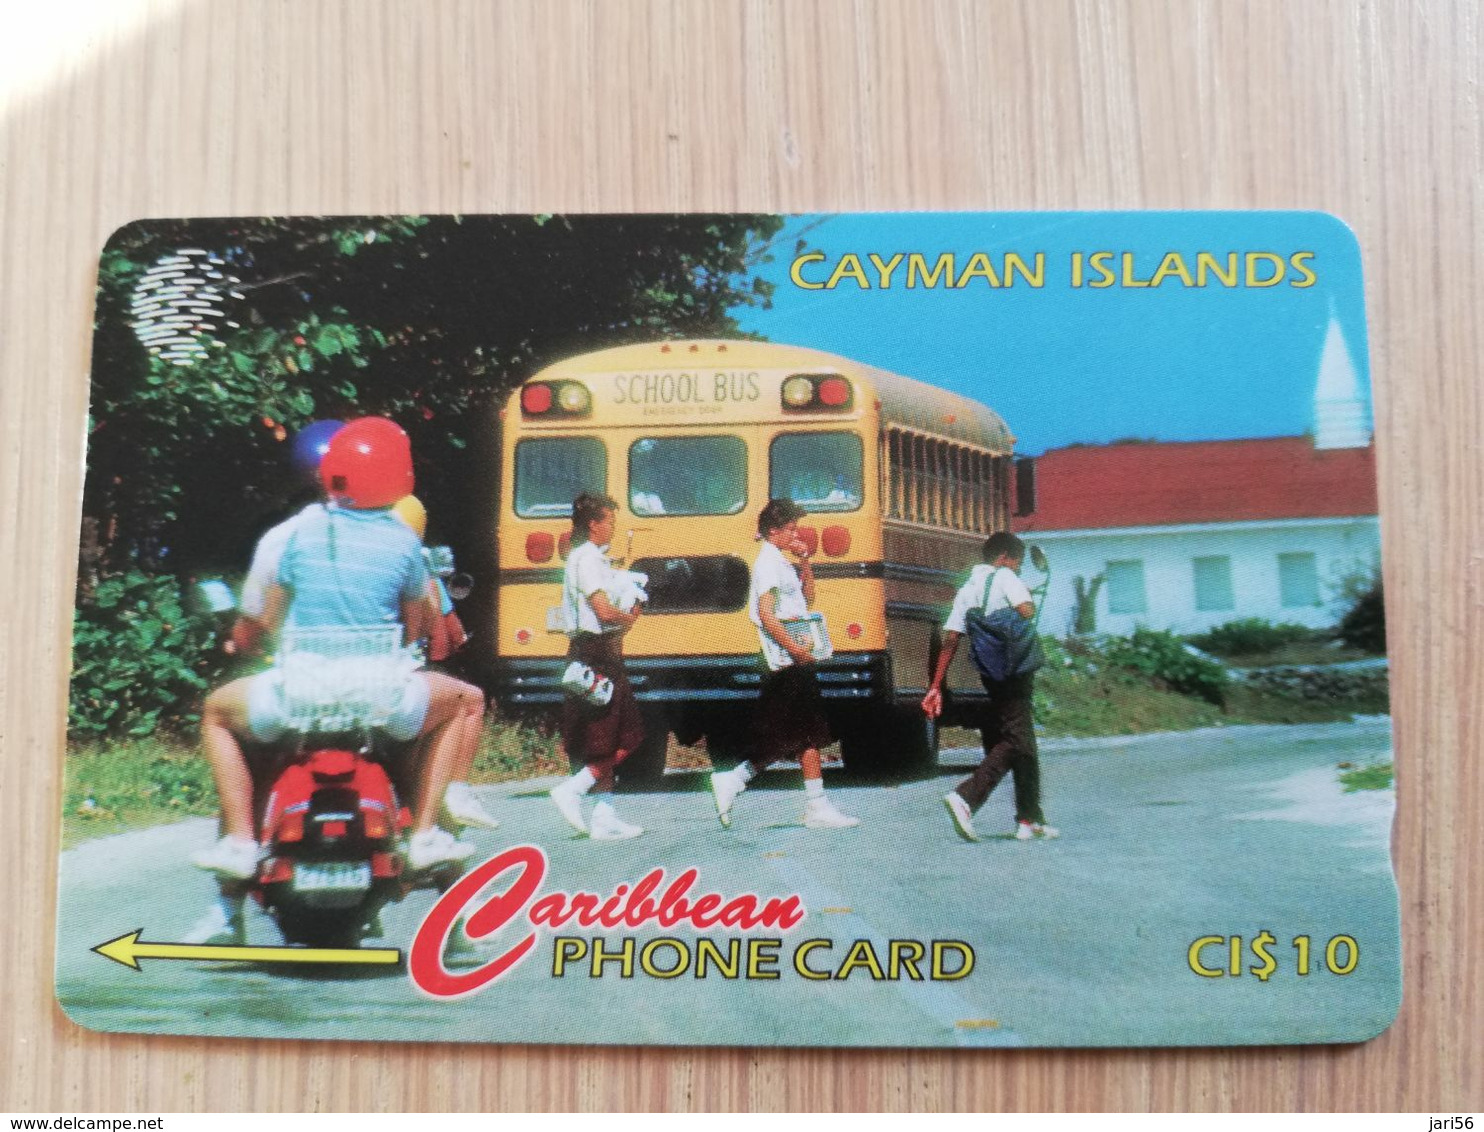 CAYMAN ISLANDS  CI $ 10,-  CAY-163A CONTROL NR 163CCIA  SCHOOL DAY/BUS     Fine Used Card  ** 3115** - Kaimaninseln (Cayman I.)